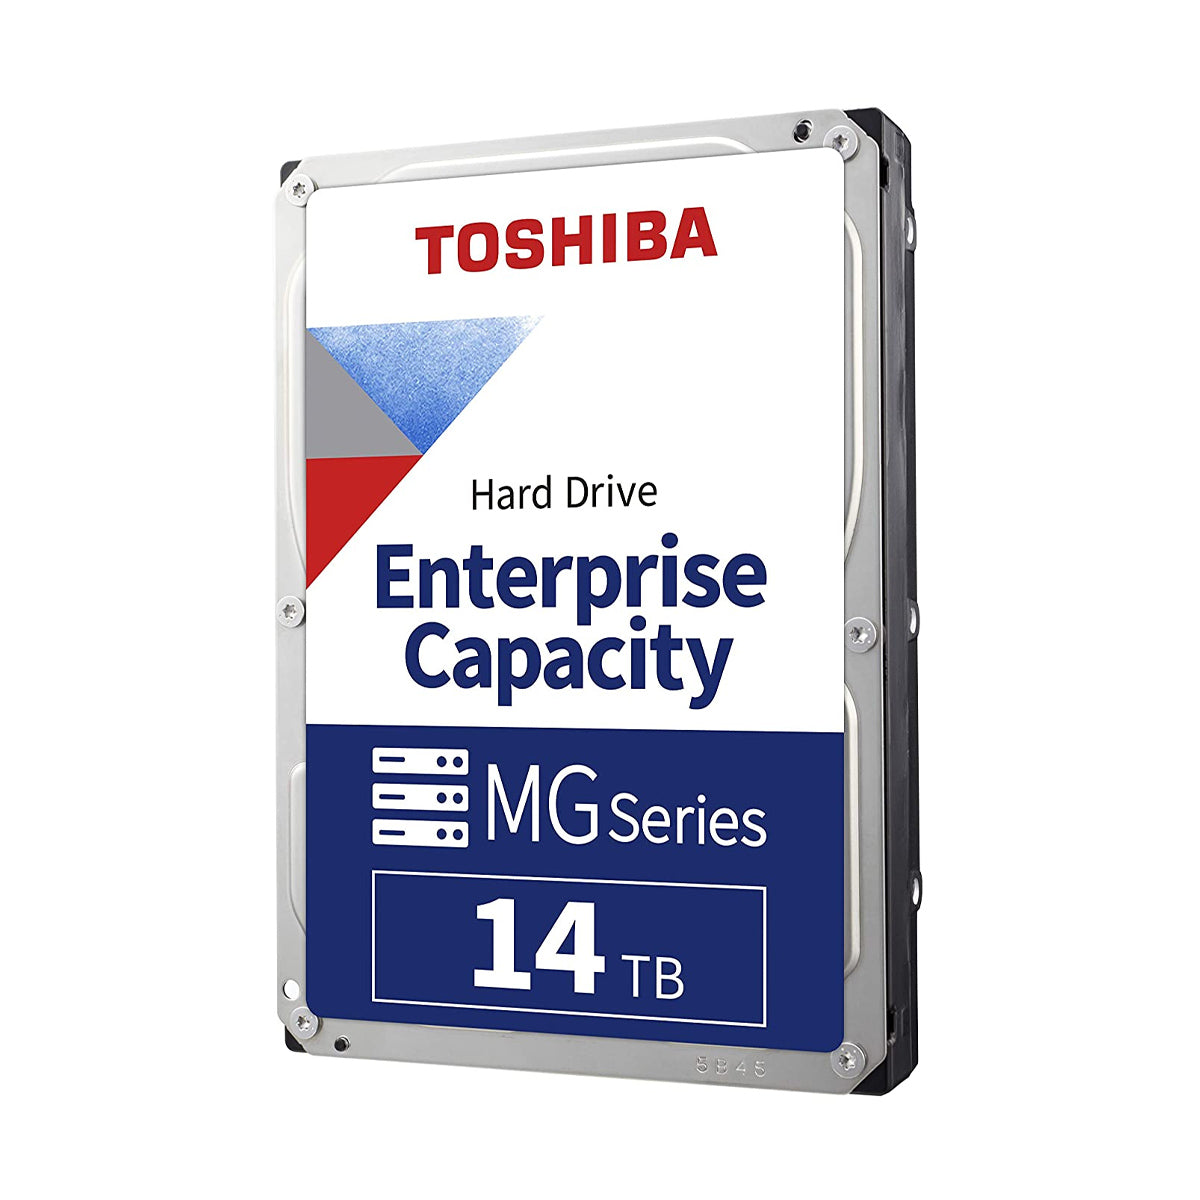 Toshiba 14TB एंटरप्राइज क्षमता 3.5 इंच SATA इंटरनल हार्ड ड्राइव 7200 rpm के साथ